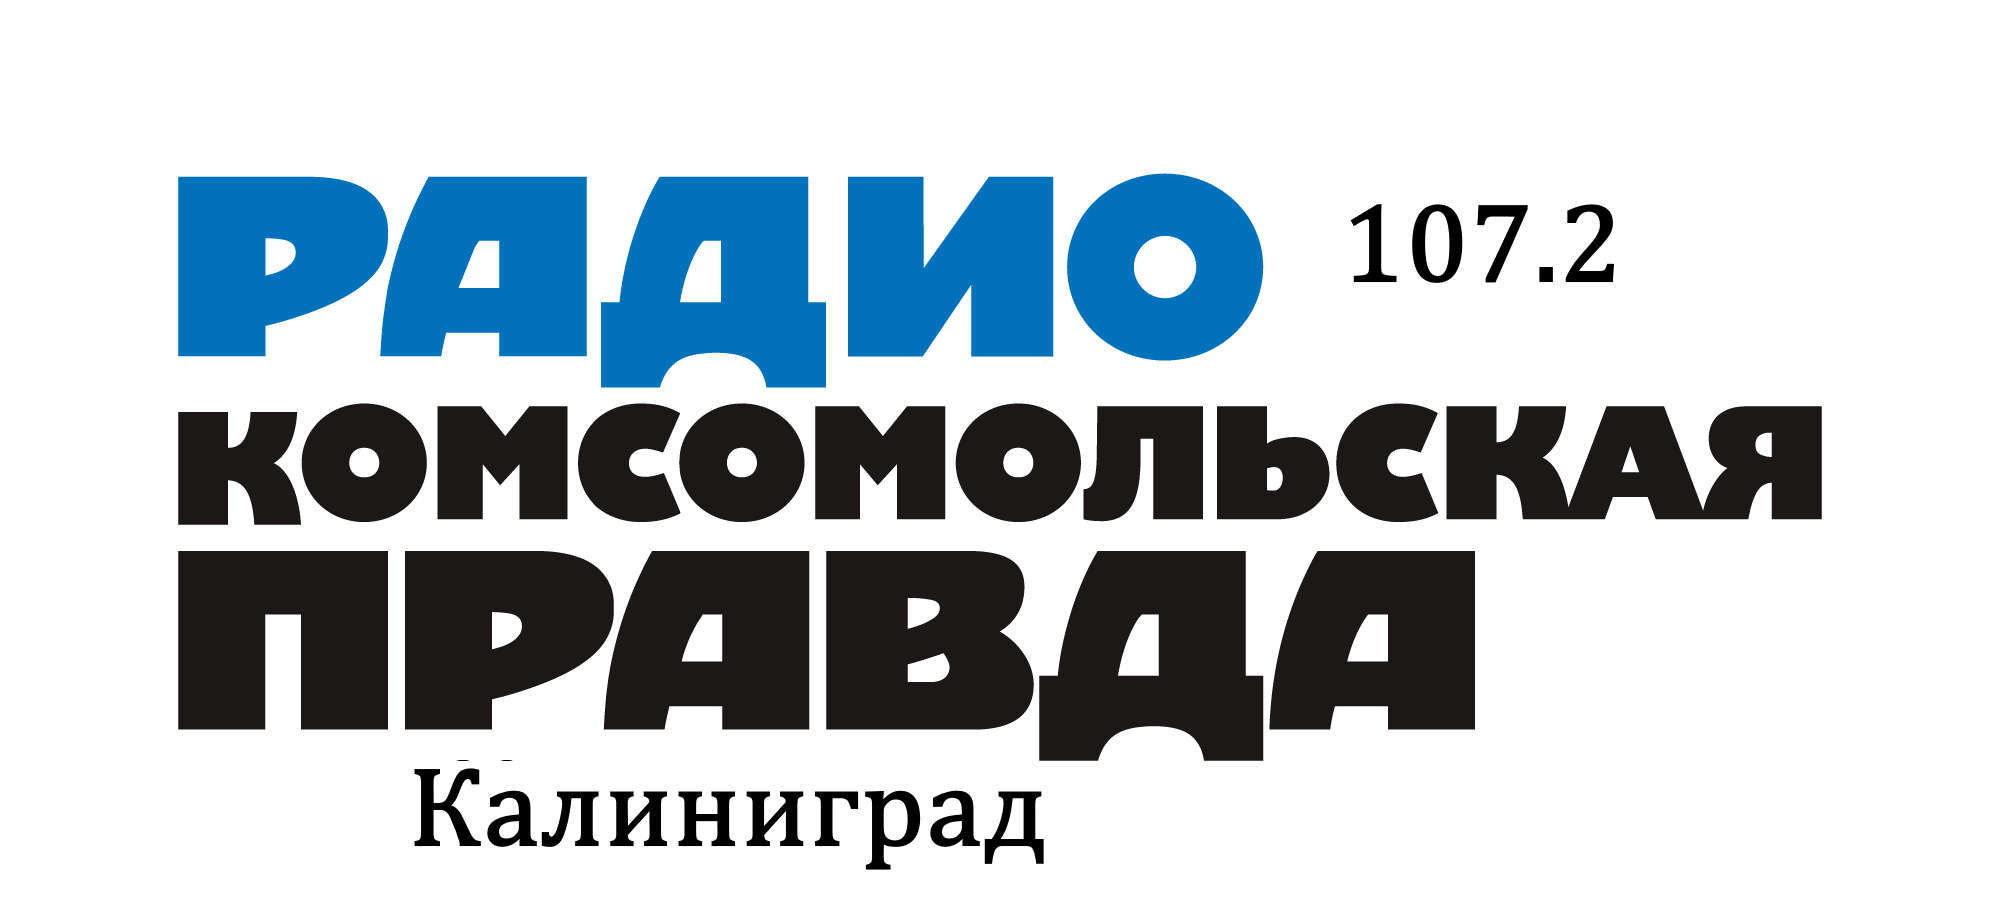 Раземщение рекламы Комсомольская правда 107.2 FM, г. Калининград